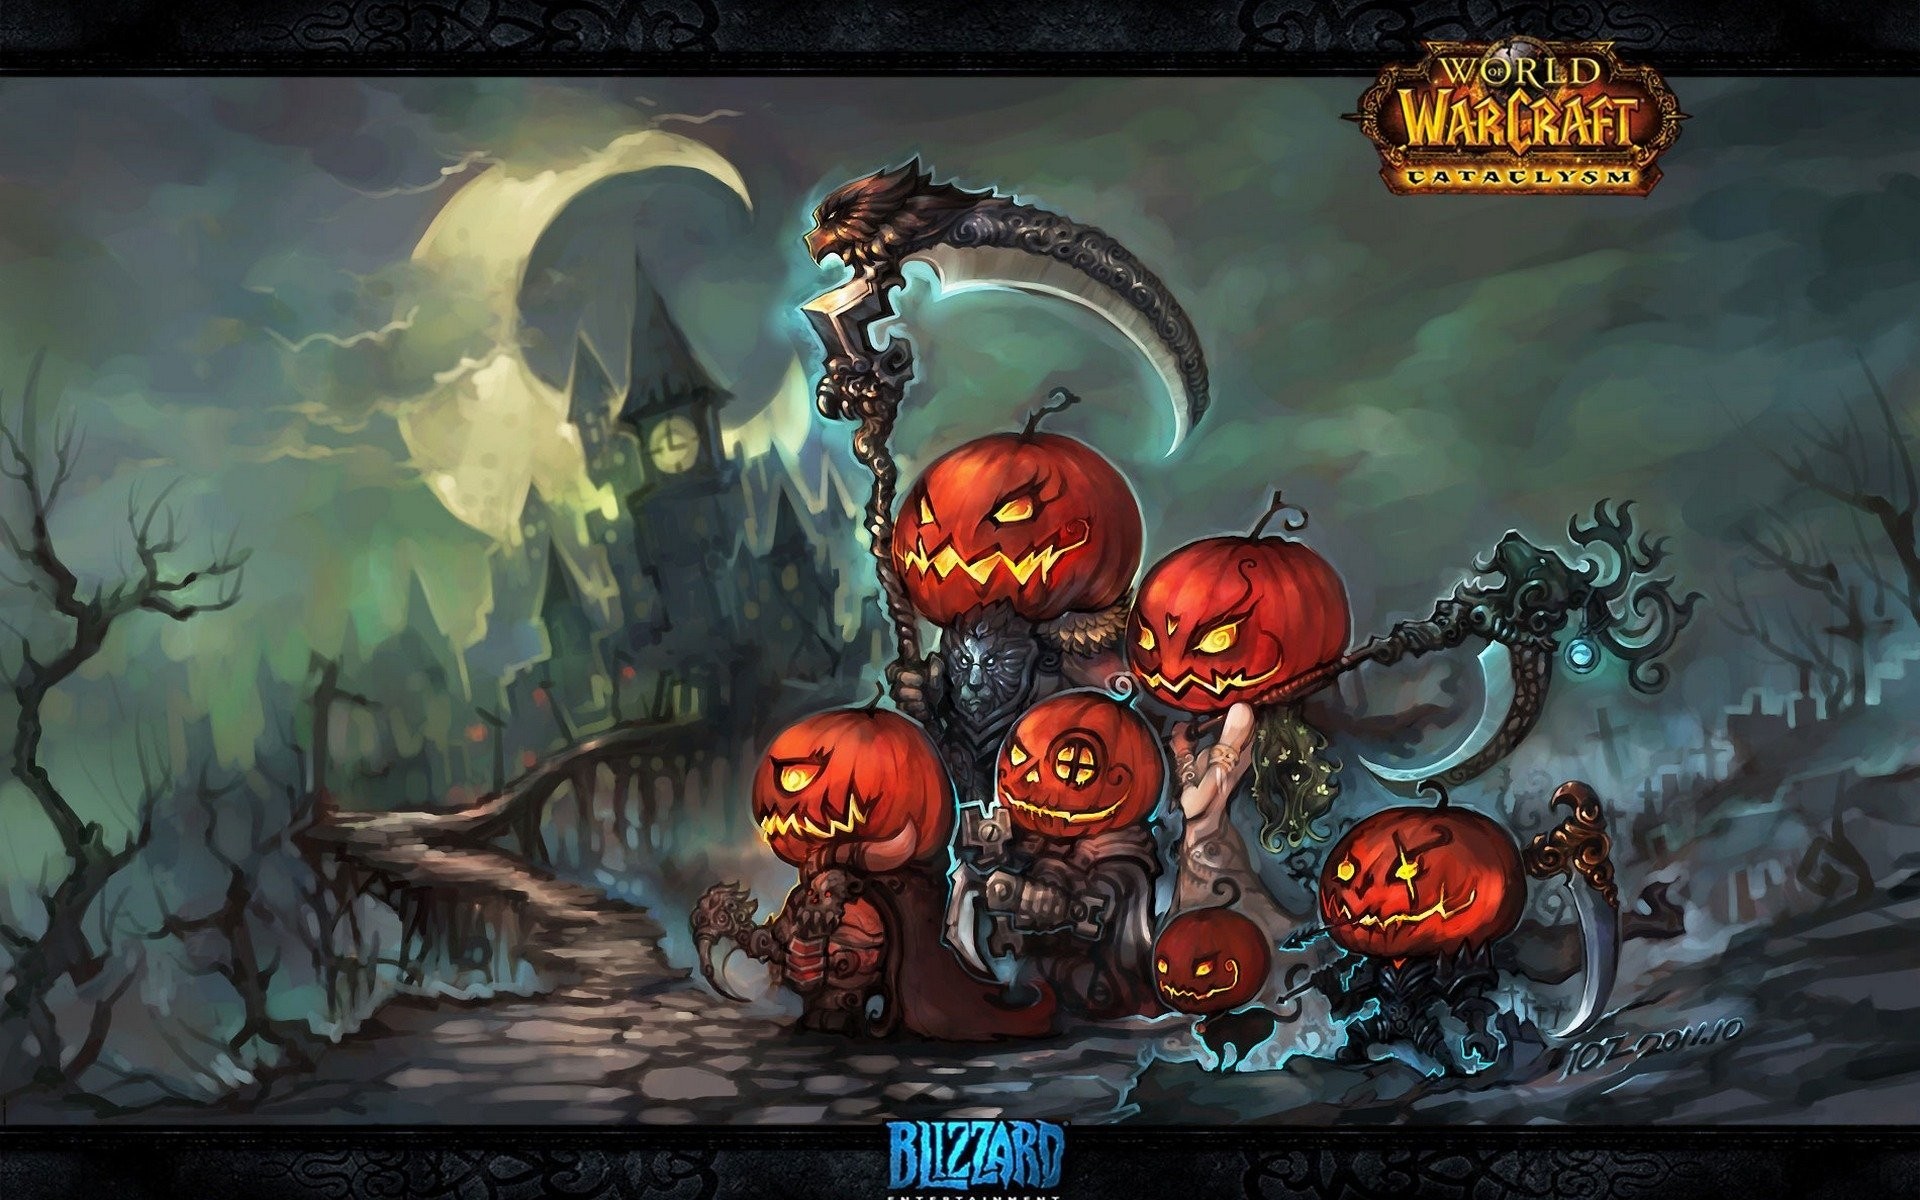 1920x1200 world of warcraft wow cataclysm game wallpapers halloween art pumpkins  halloween pumpkin elves swords weapon art